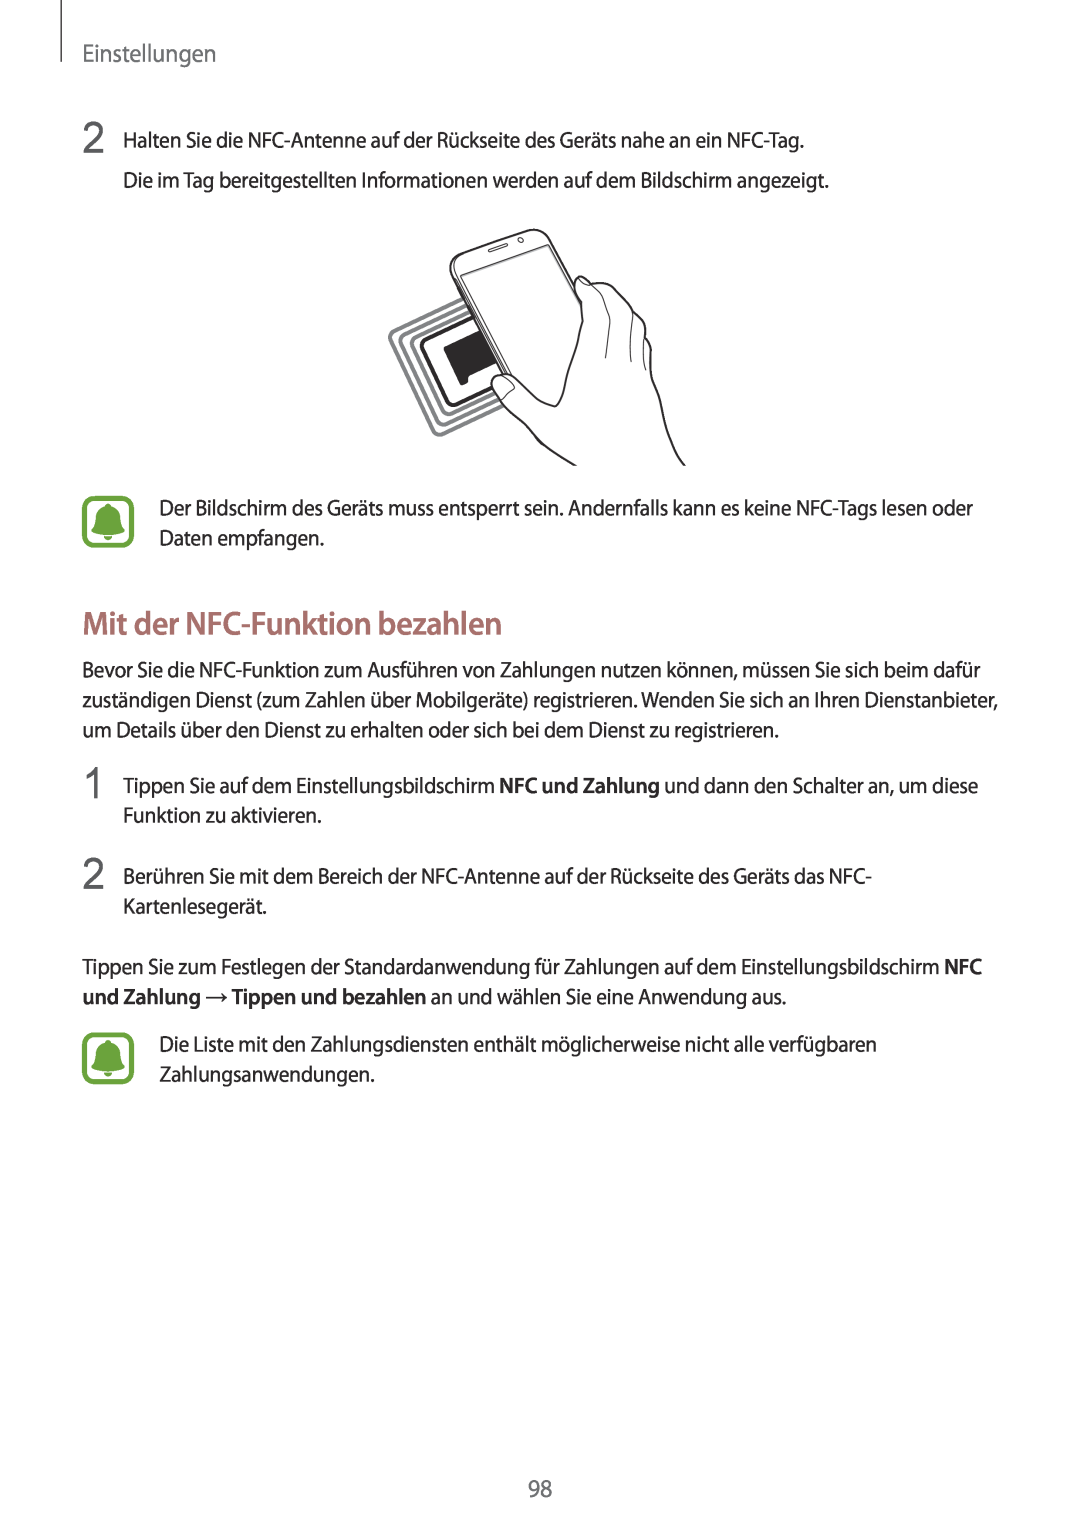 Samsung SM-G920FZDEDBT, SM-G920FZKFDBT, SM-G920FZKEDBT, SM-G920FZBEDBT manual Mit der NFC-Funktion bezahlen, Einstellungen 